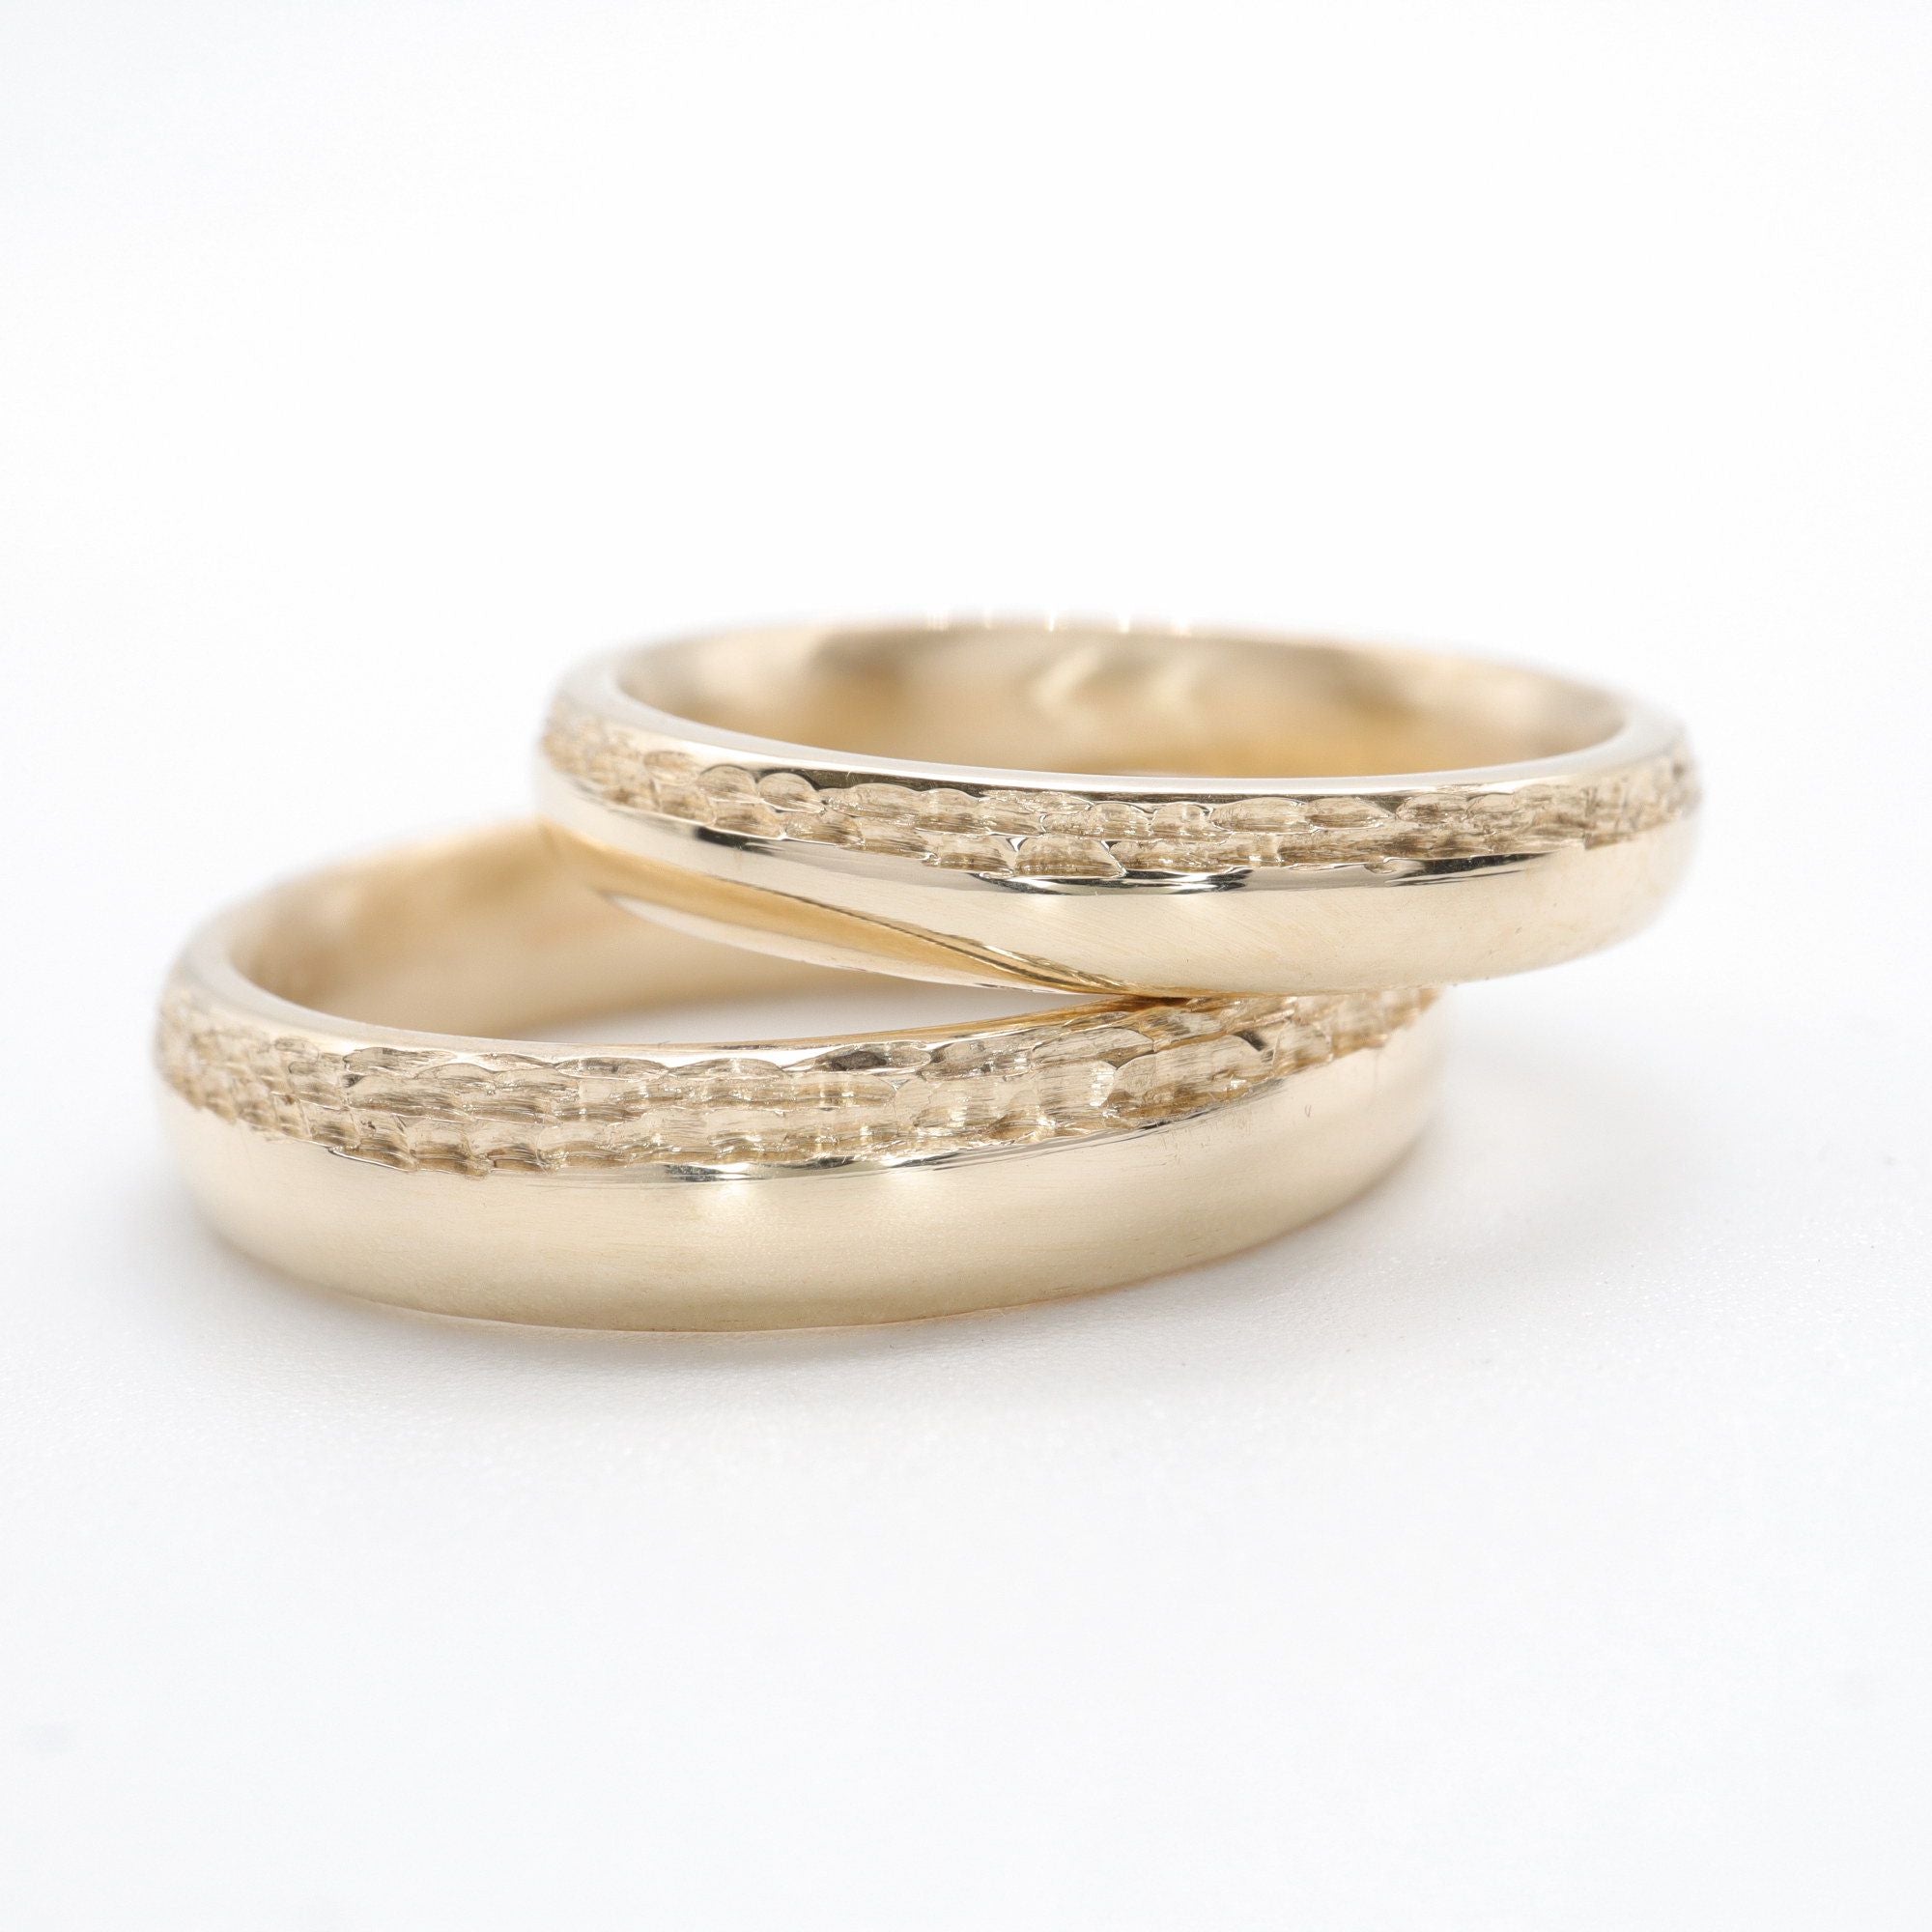 Handmade Wooden Wedding Rings for Sale | River Martin Studios